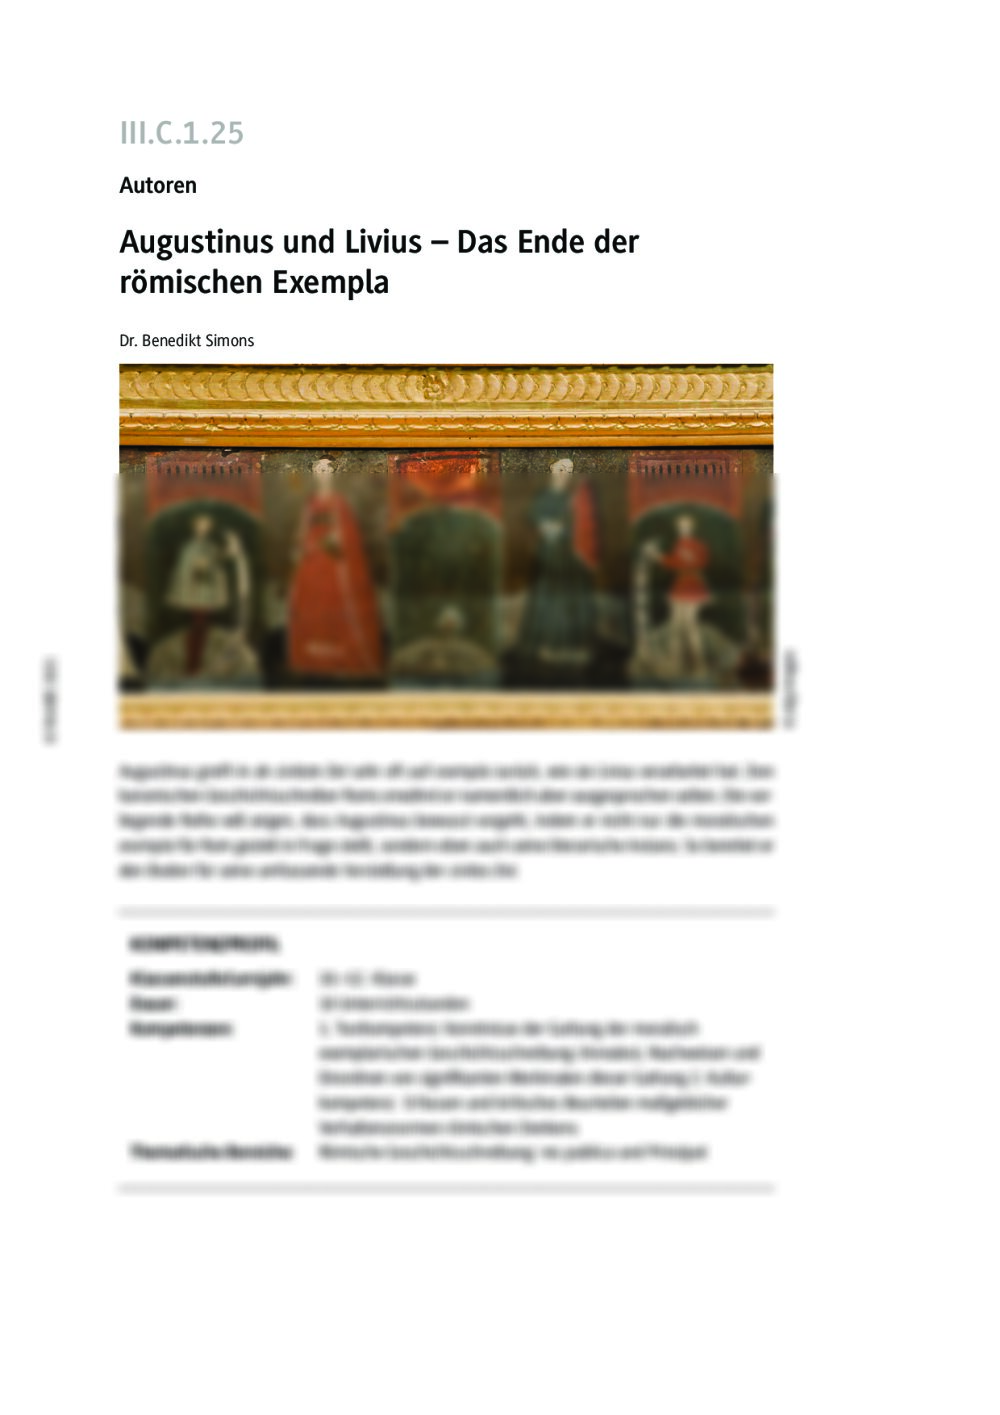 Augustinus und Livius – Das Ende der römischen exempla - Seite 1